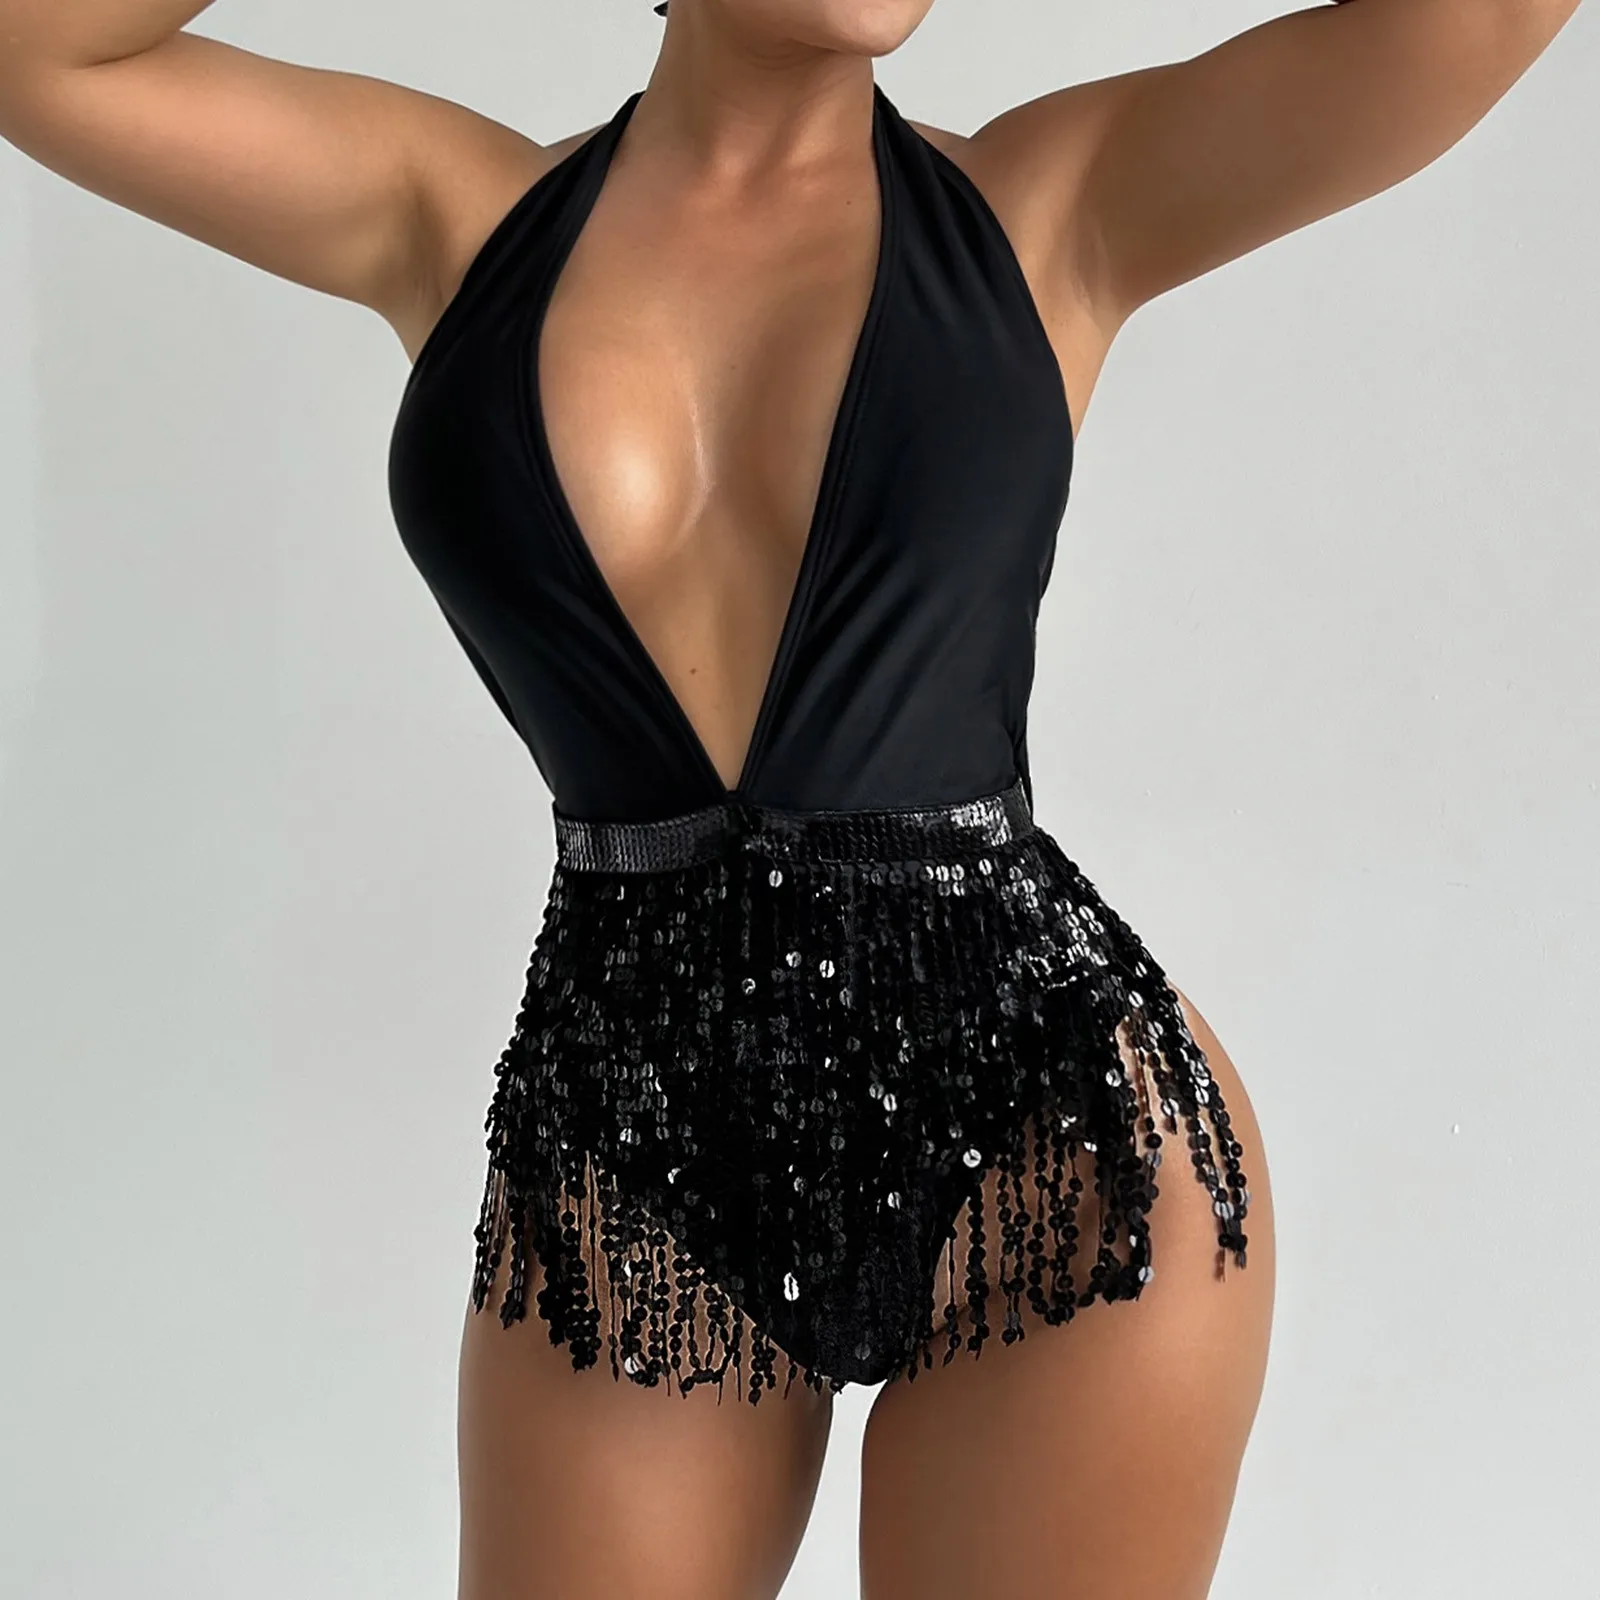 

Deep V Bikini Tassels Bodysuits Swimsuits Women Black Halter Backless Swimwear One Piece Summer Party Beachwear Bathing Suit